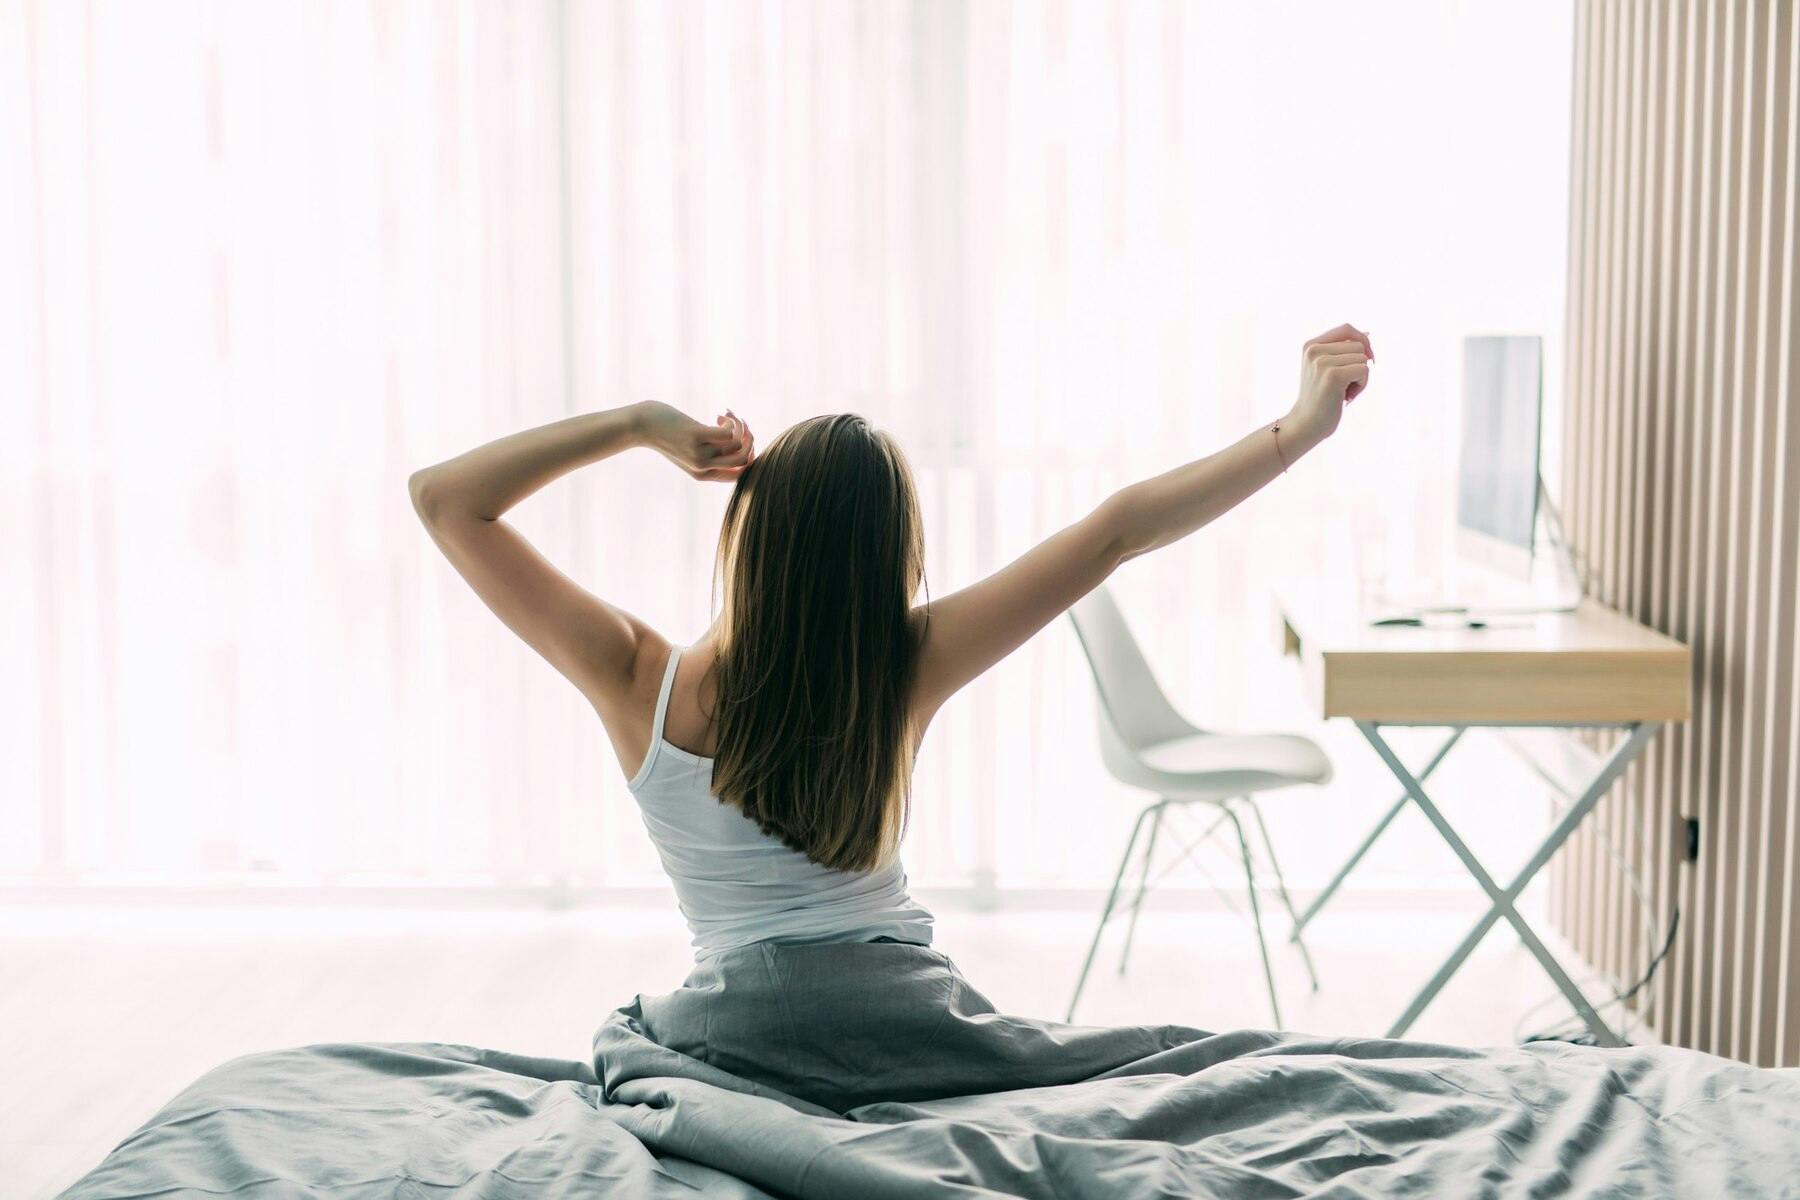 Joven mujer de espaldas desperezándose luego de despertar, sentada sobre su cama, sábanas blancas, luz clara de la mañana